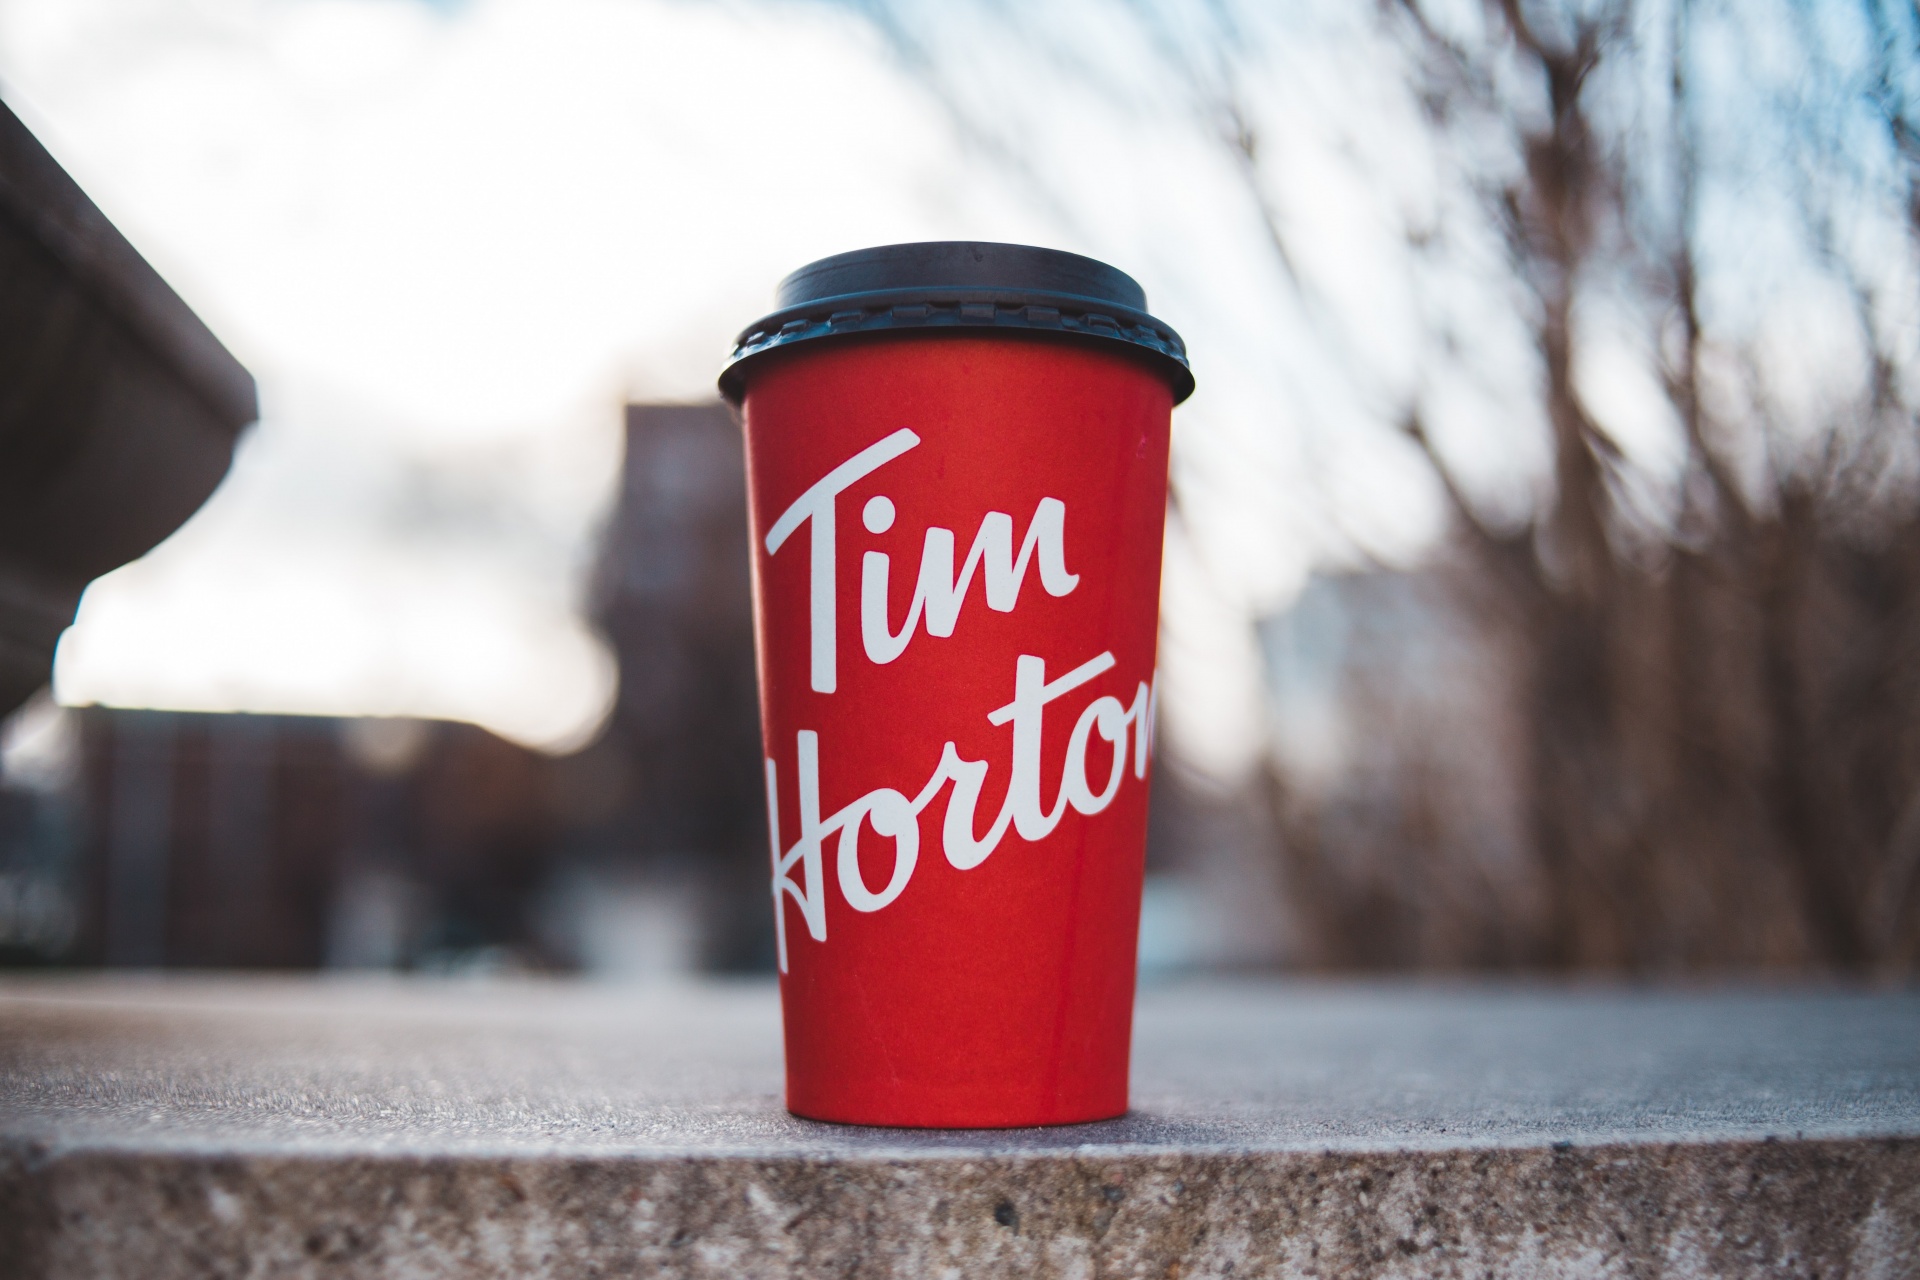 Chuỗi nhà hàng Tim Horton có mở rộng quốc tế không và nổi tiếng đến mức nào?